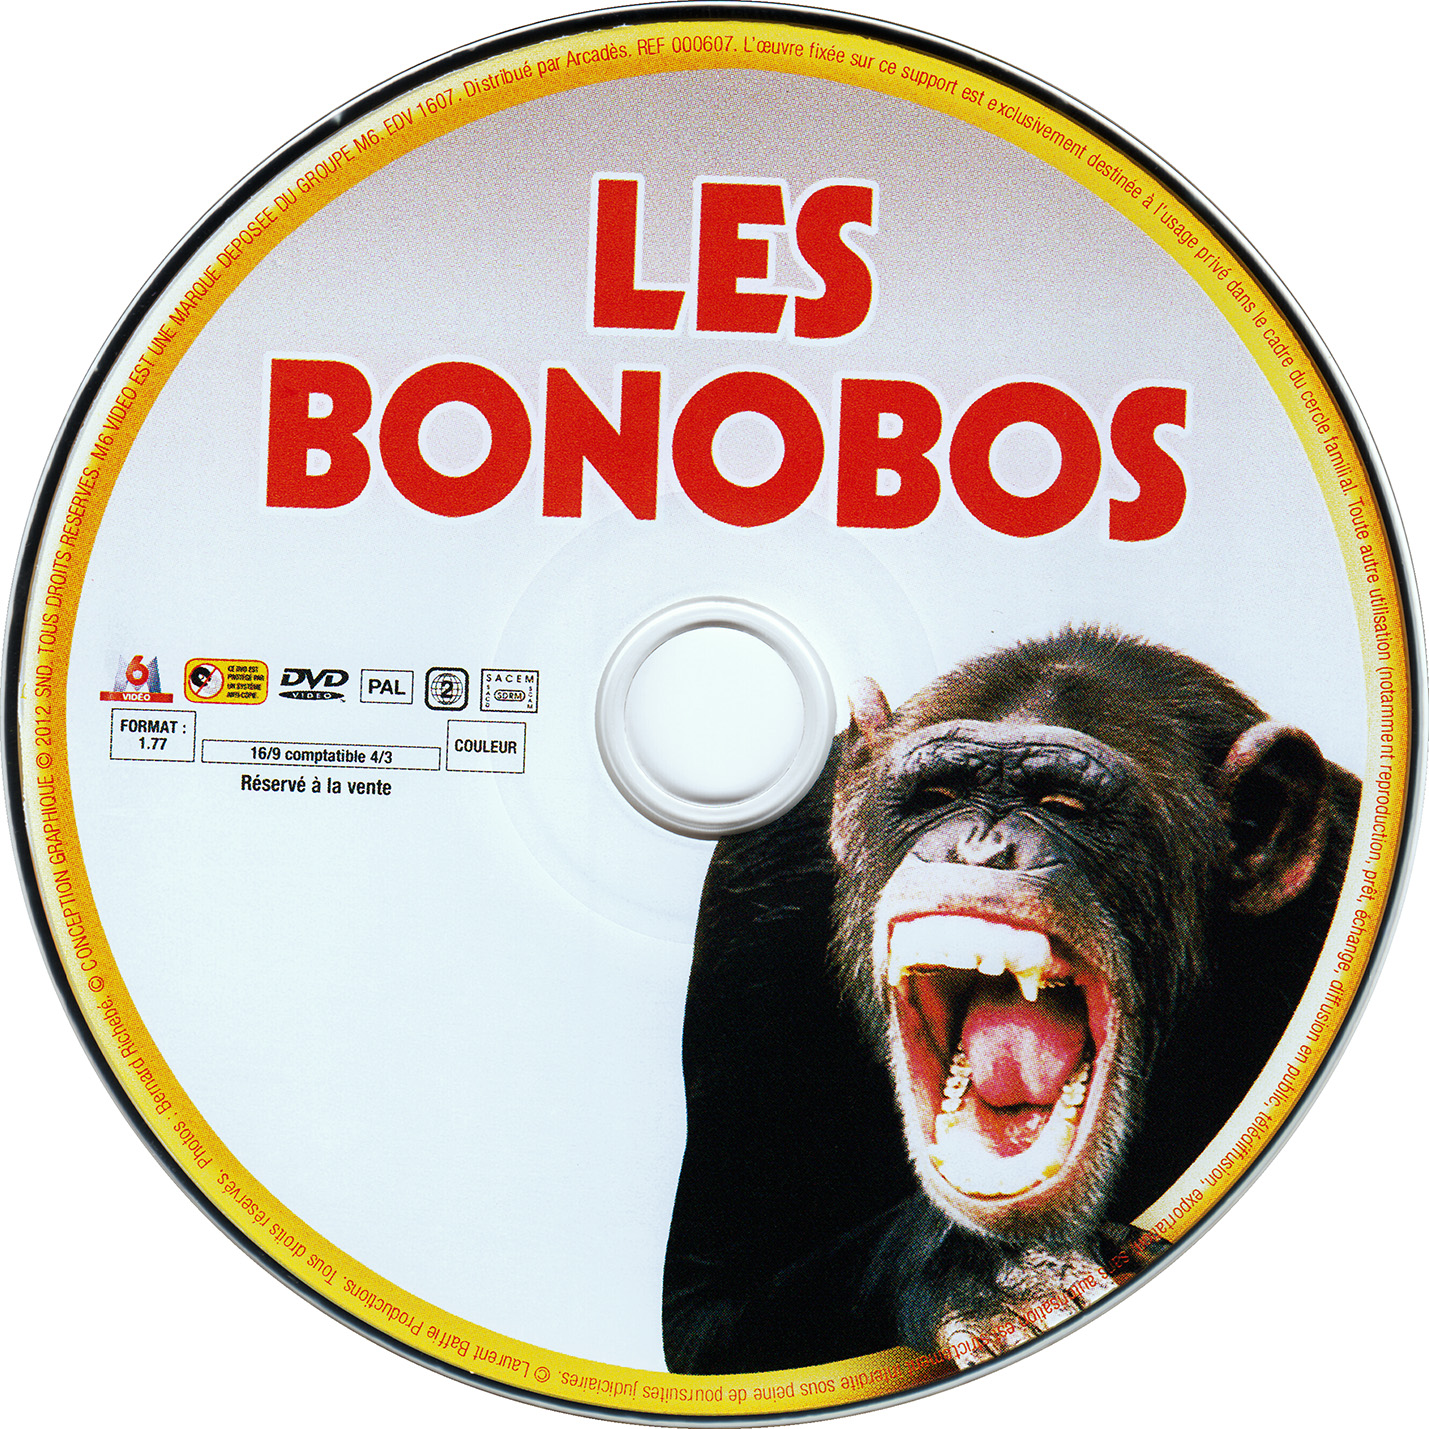 Les bonobos (Piece thtre)